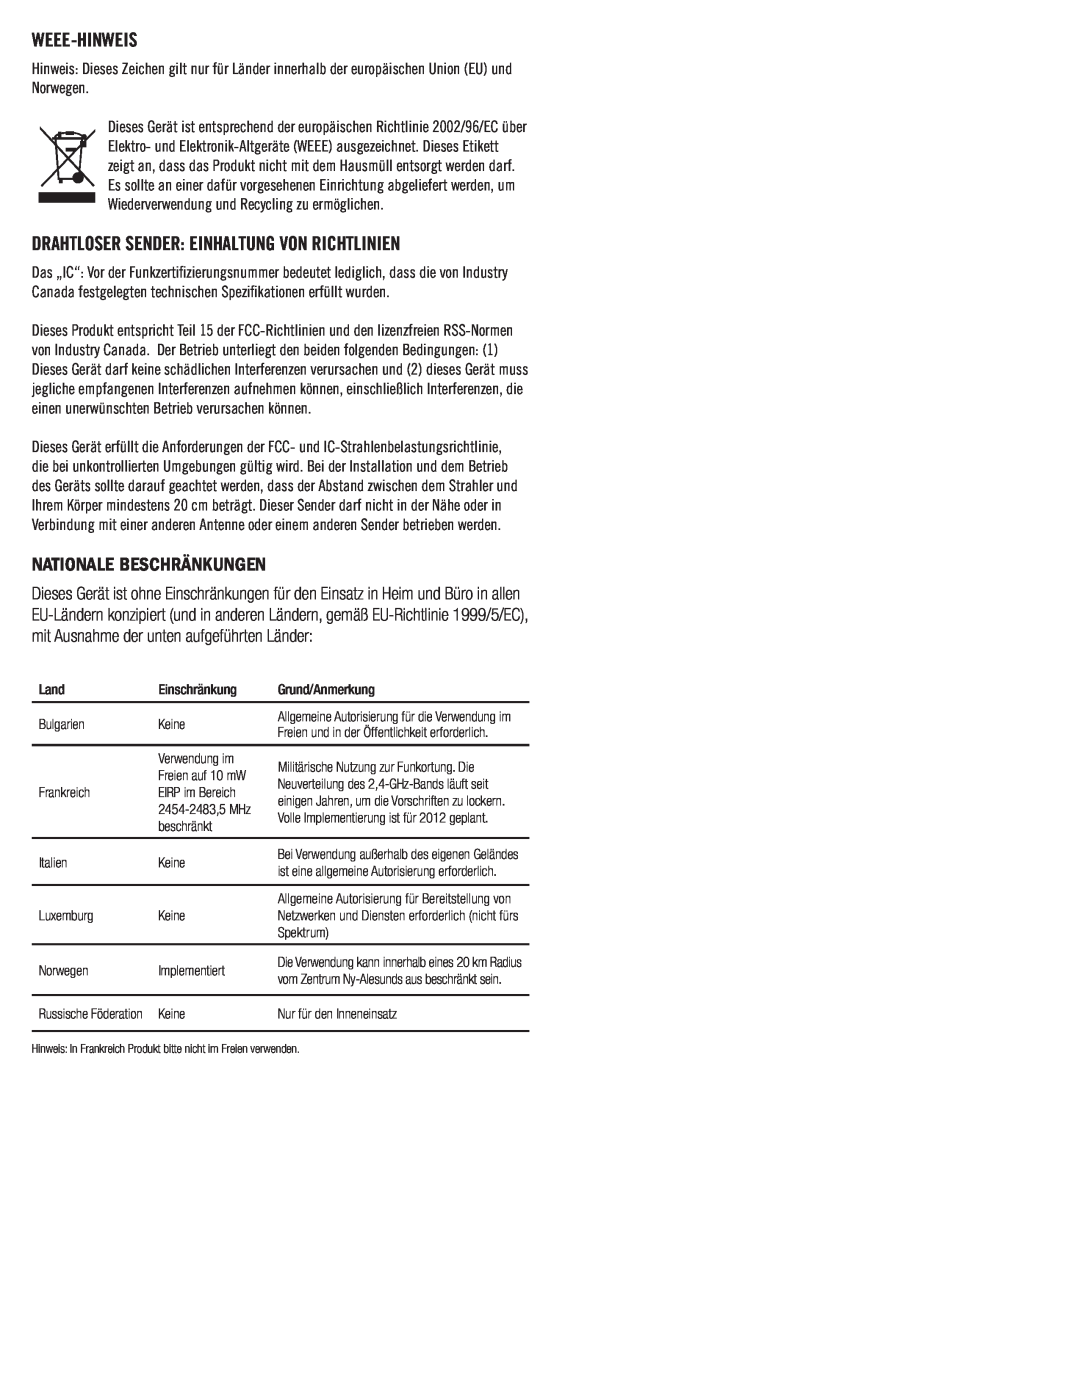 Klipsch SB 1 owner manual Weee-Hinweis, Drahtloser Sender Einhaltung Von Richtlinien, Nationale Beschränkungen 